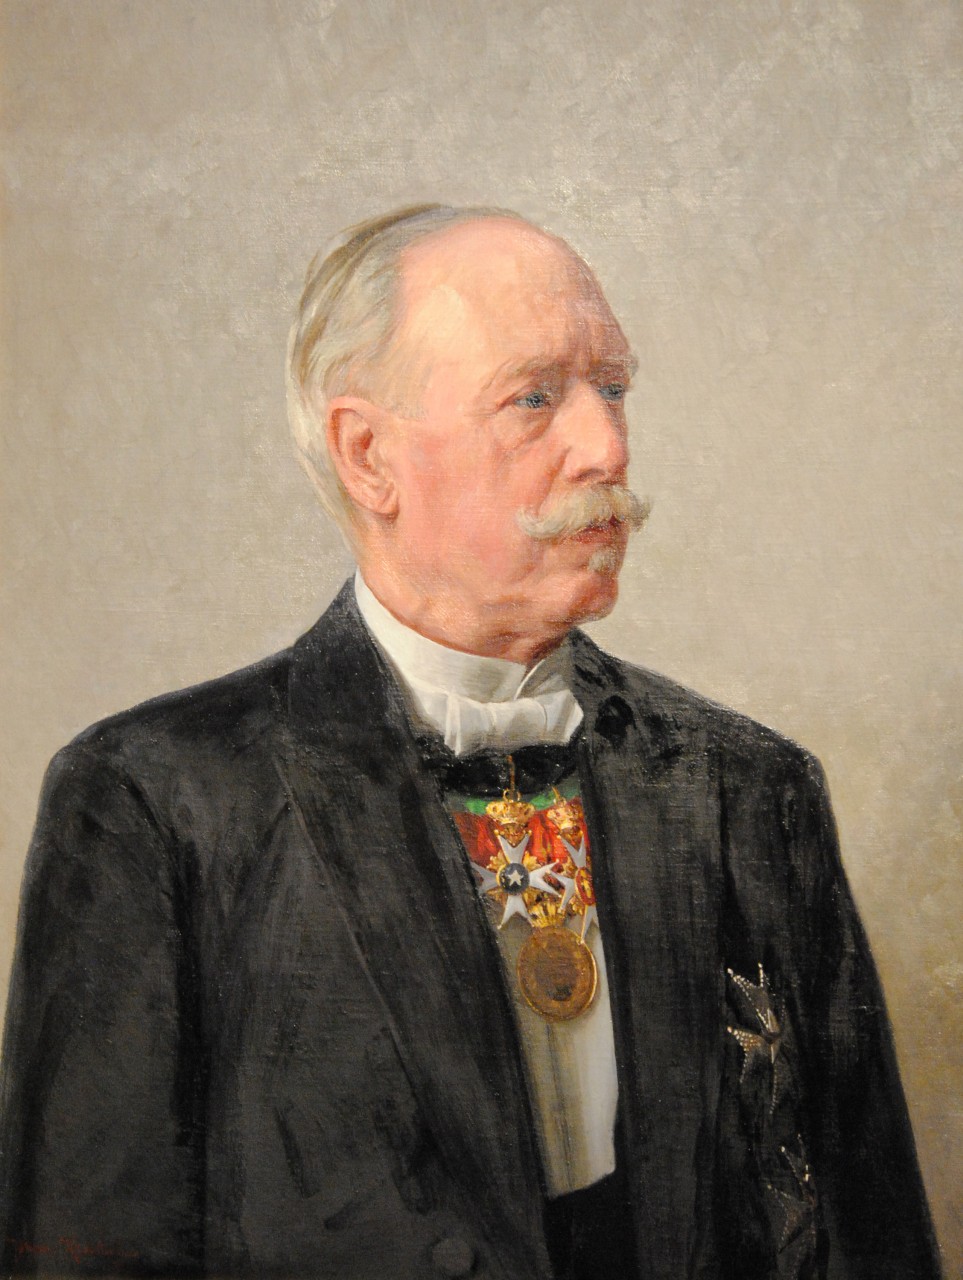 Porträtt av Philip Klingspor 1919, Östgöta hypoteksförening